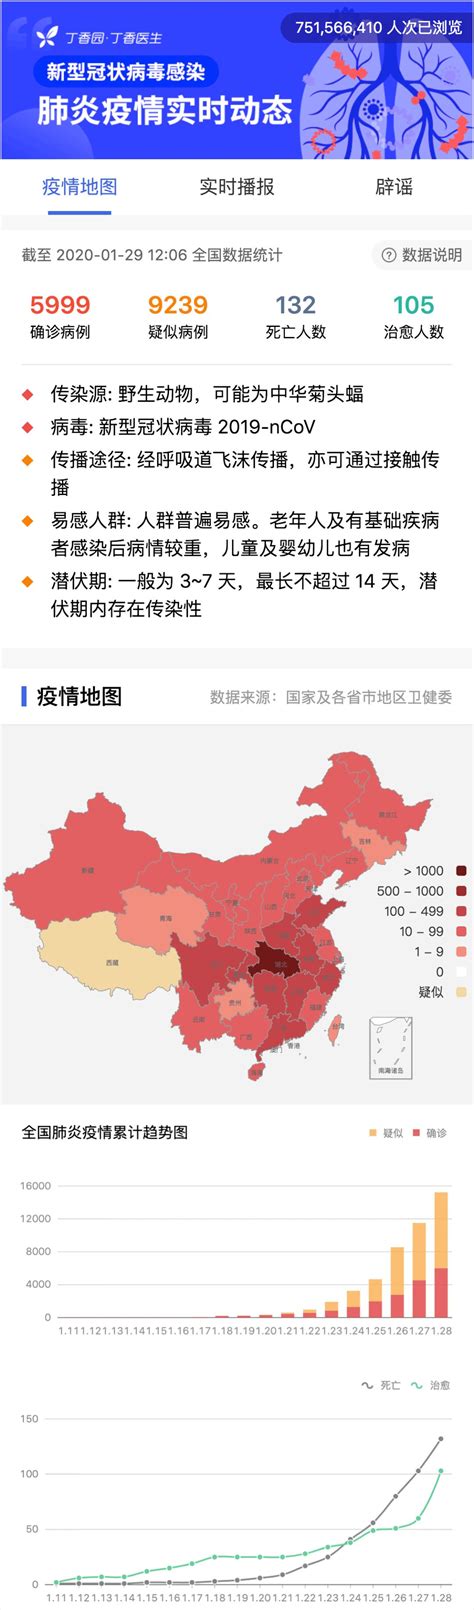 新冠肺炎疫情最新数据消息：31省区市新增境外输入25例 - 中国基因网